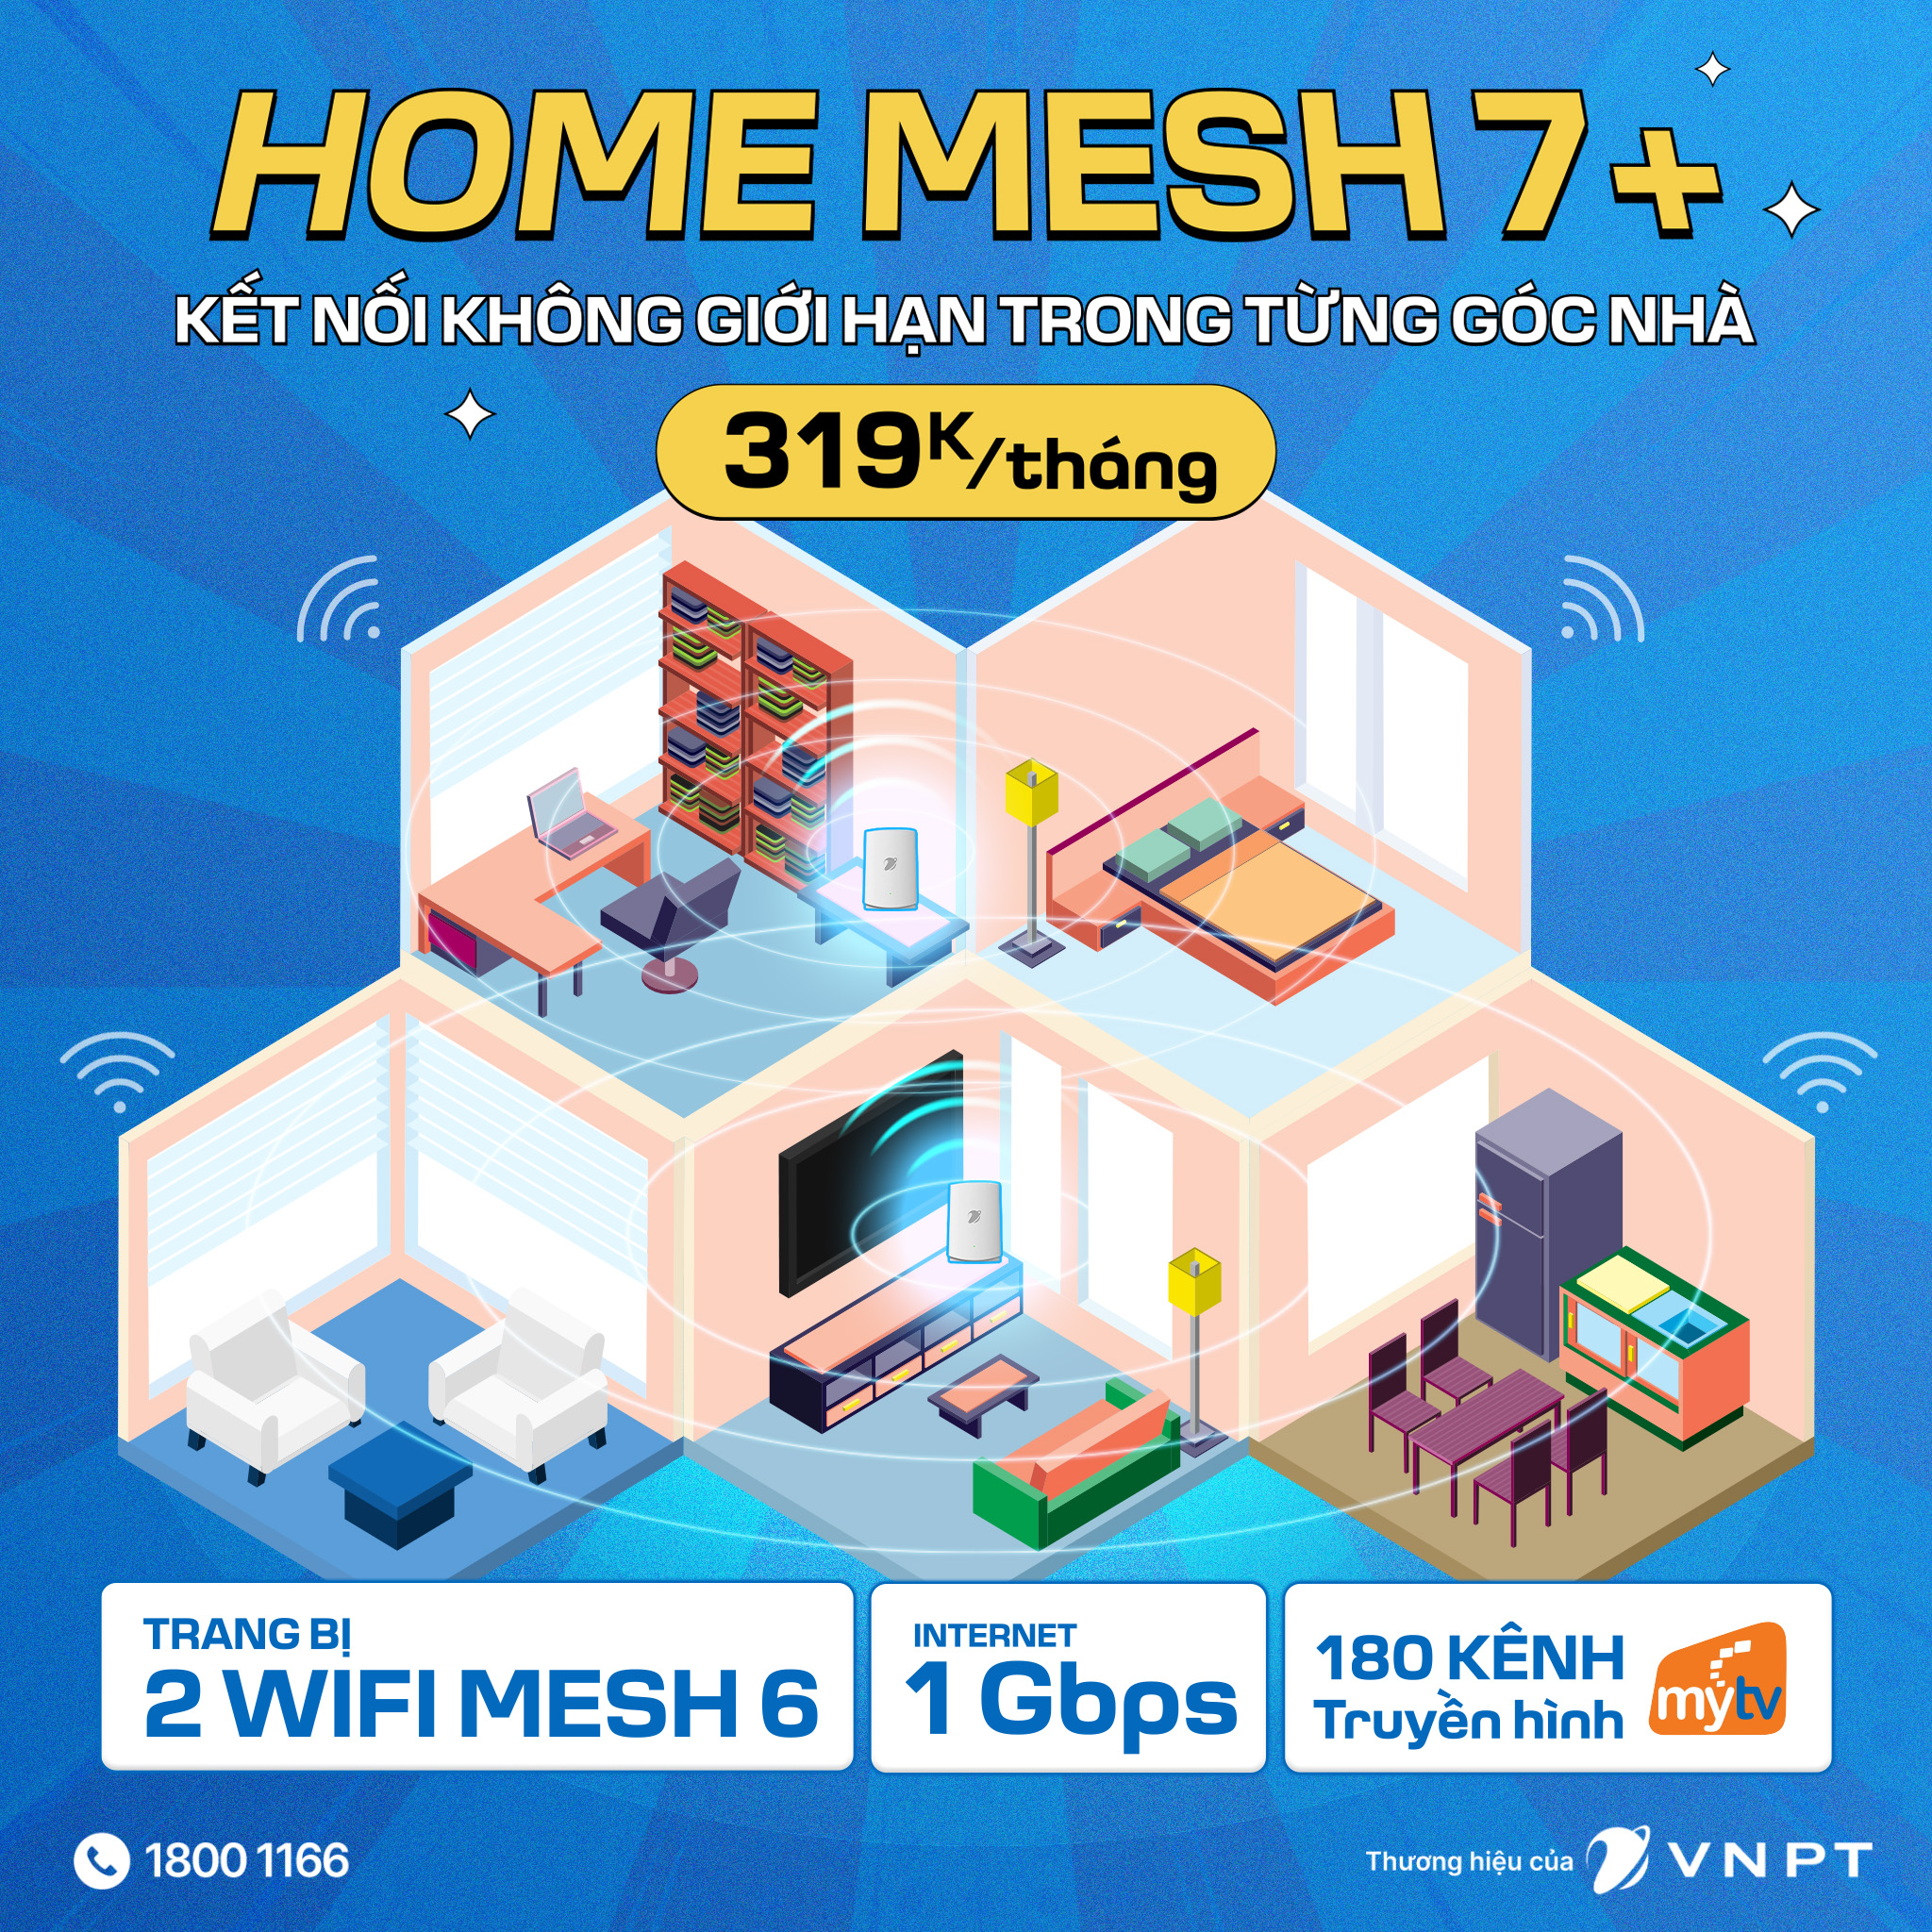 Đăng ký lắp wifi VNPT gói cước Home Mesh 7+ tận hưởng băng thông vô hạn mới nhất